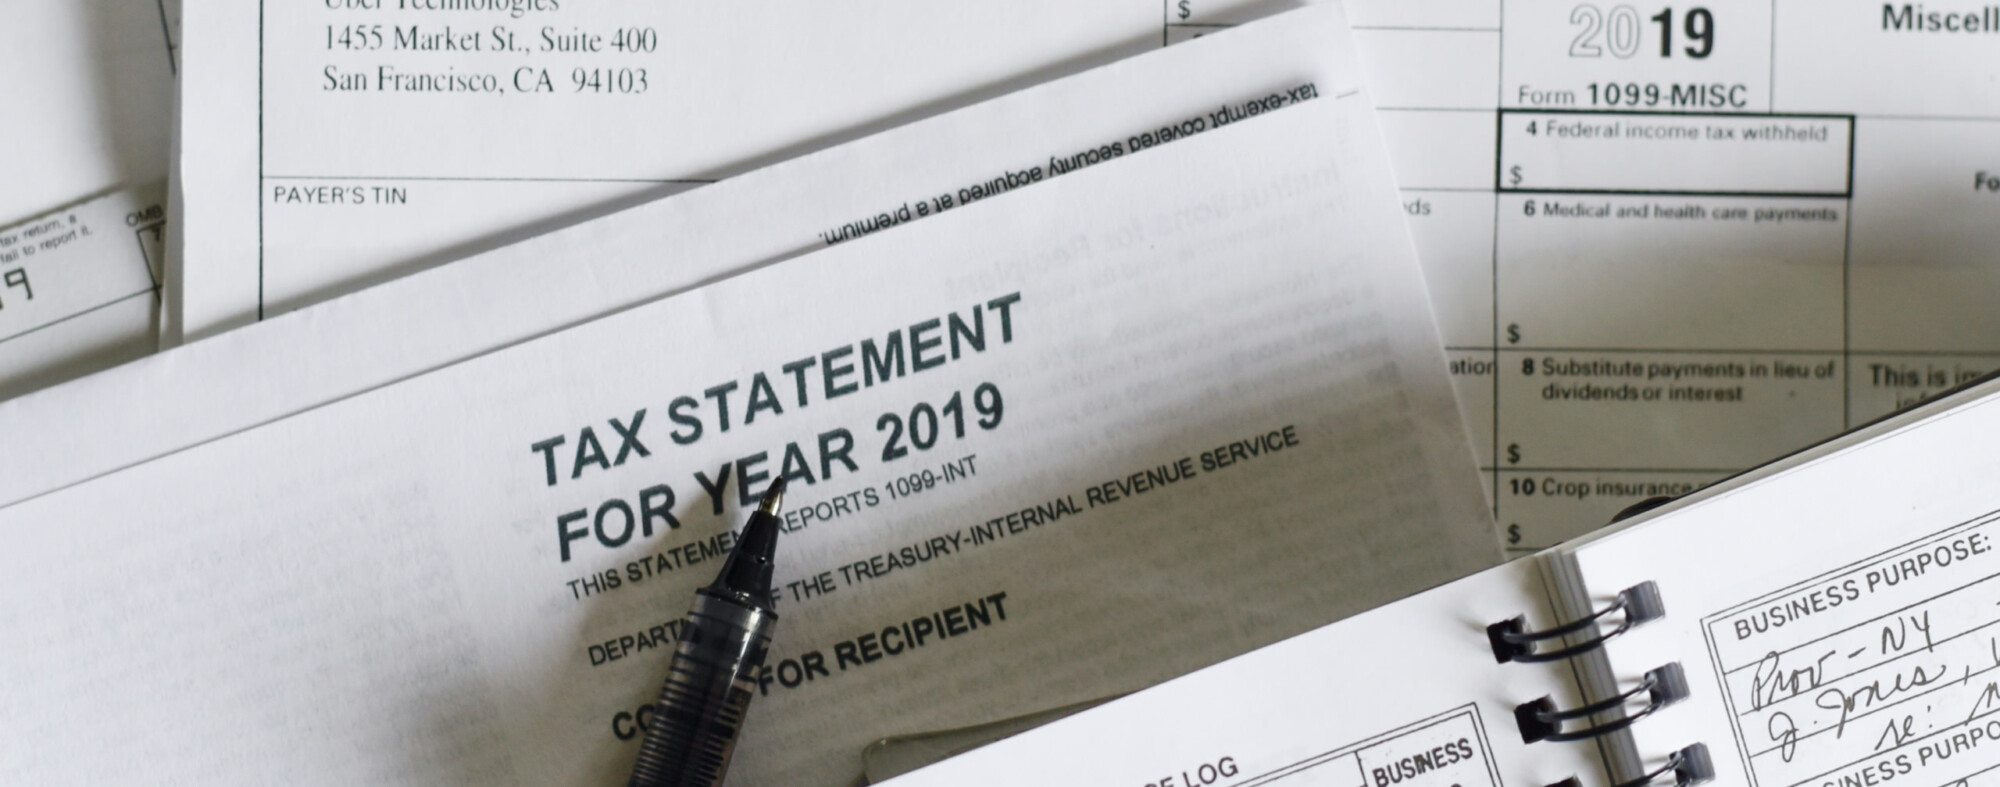 tax statement documents